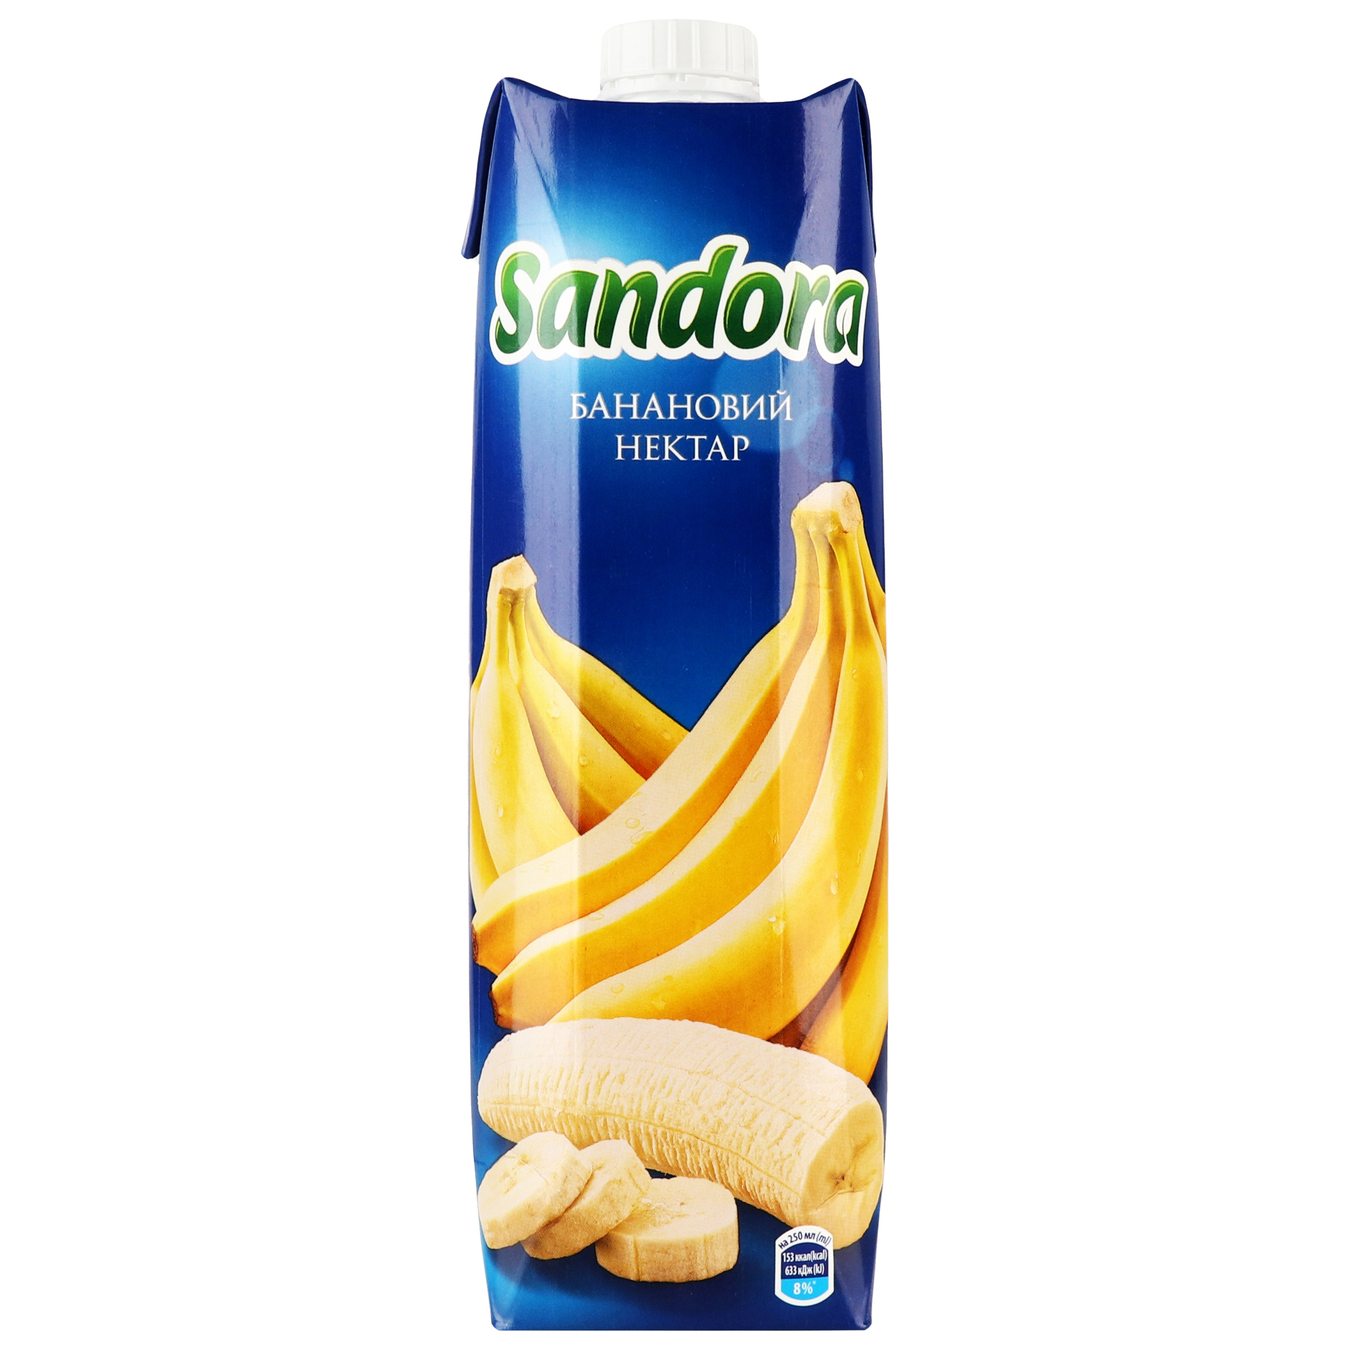 Sandora Banana Nectar 0,95l